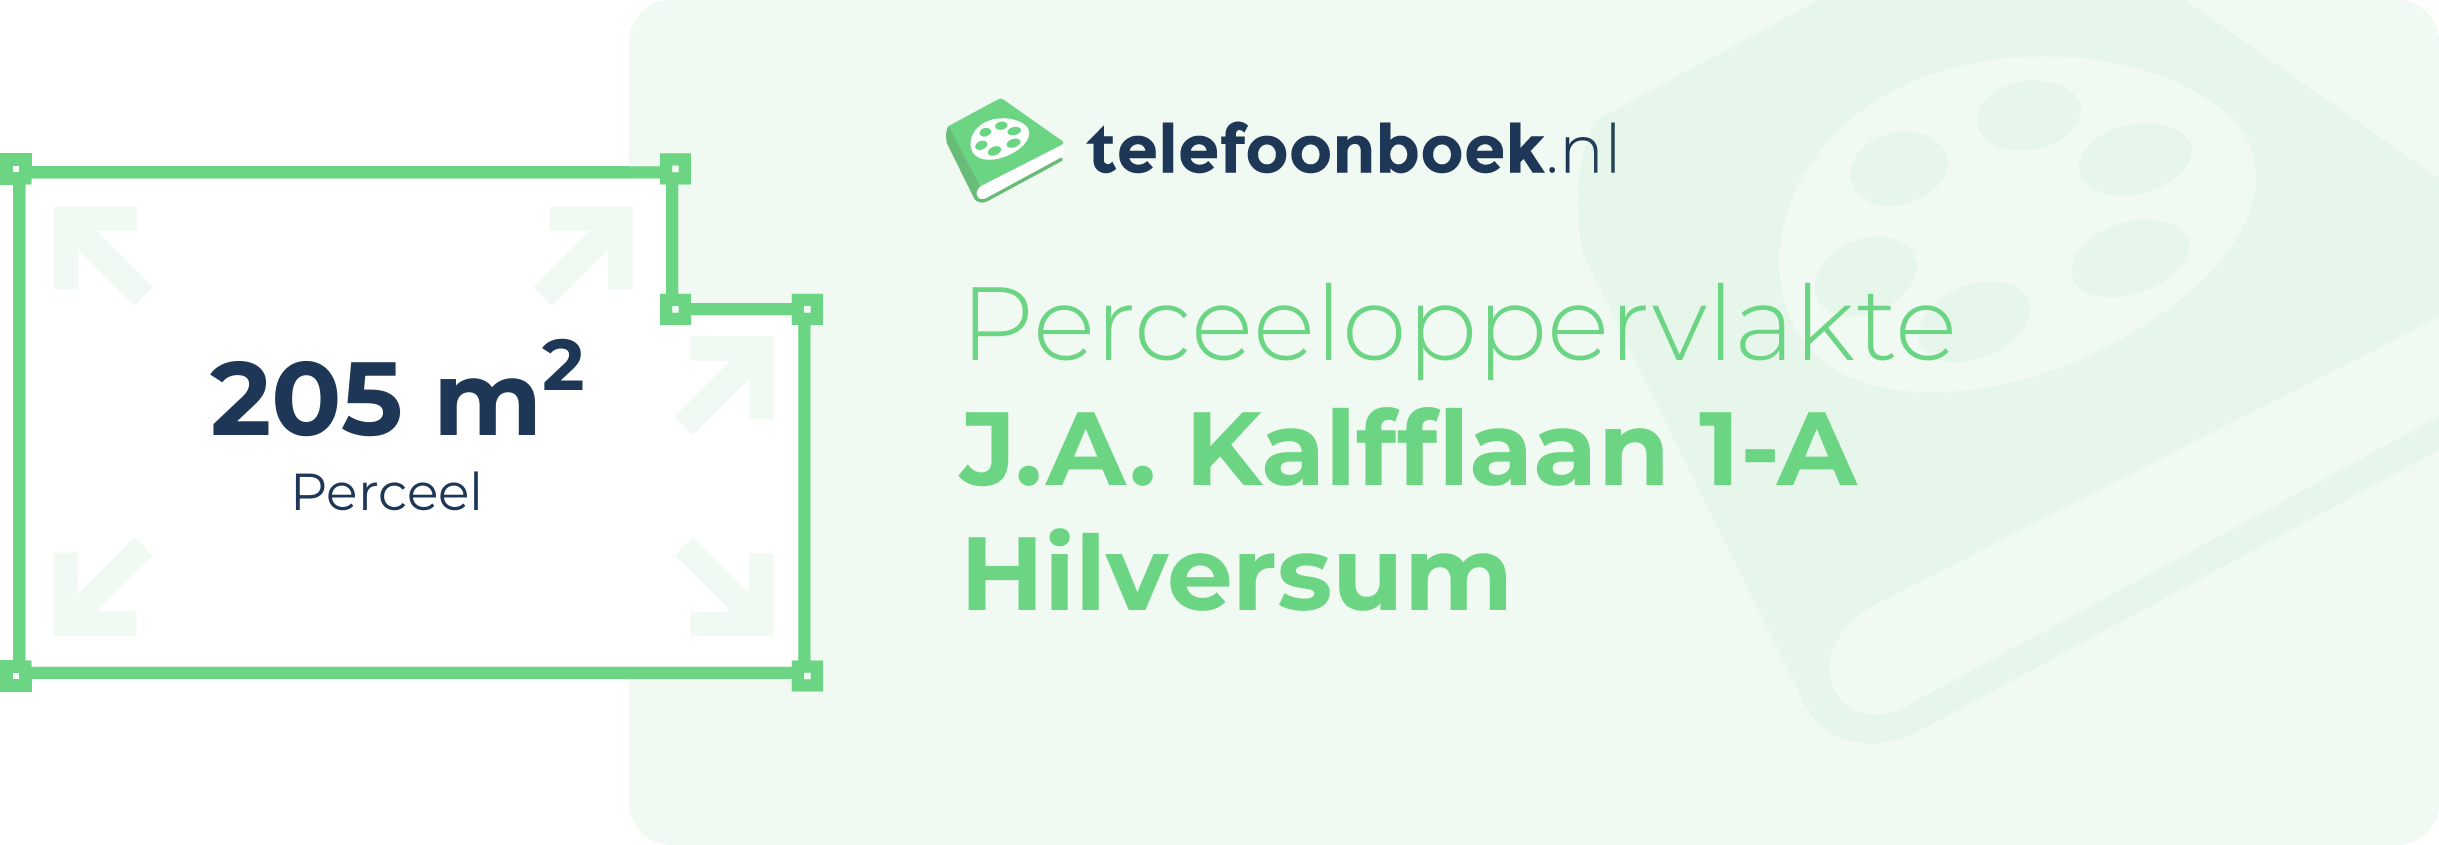 Perceeloppervlakte J.A. Kalfflaan 1-A Hilversum